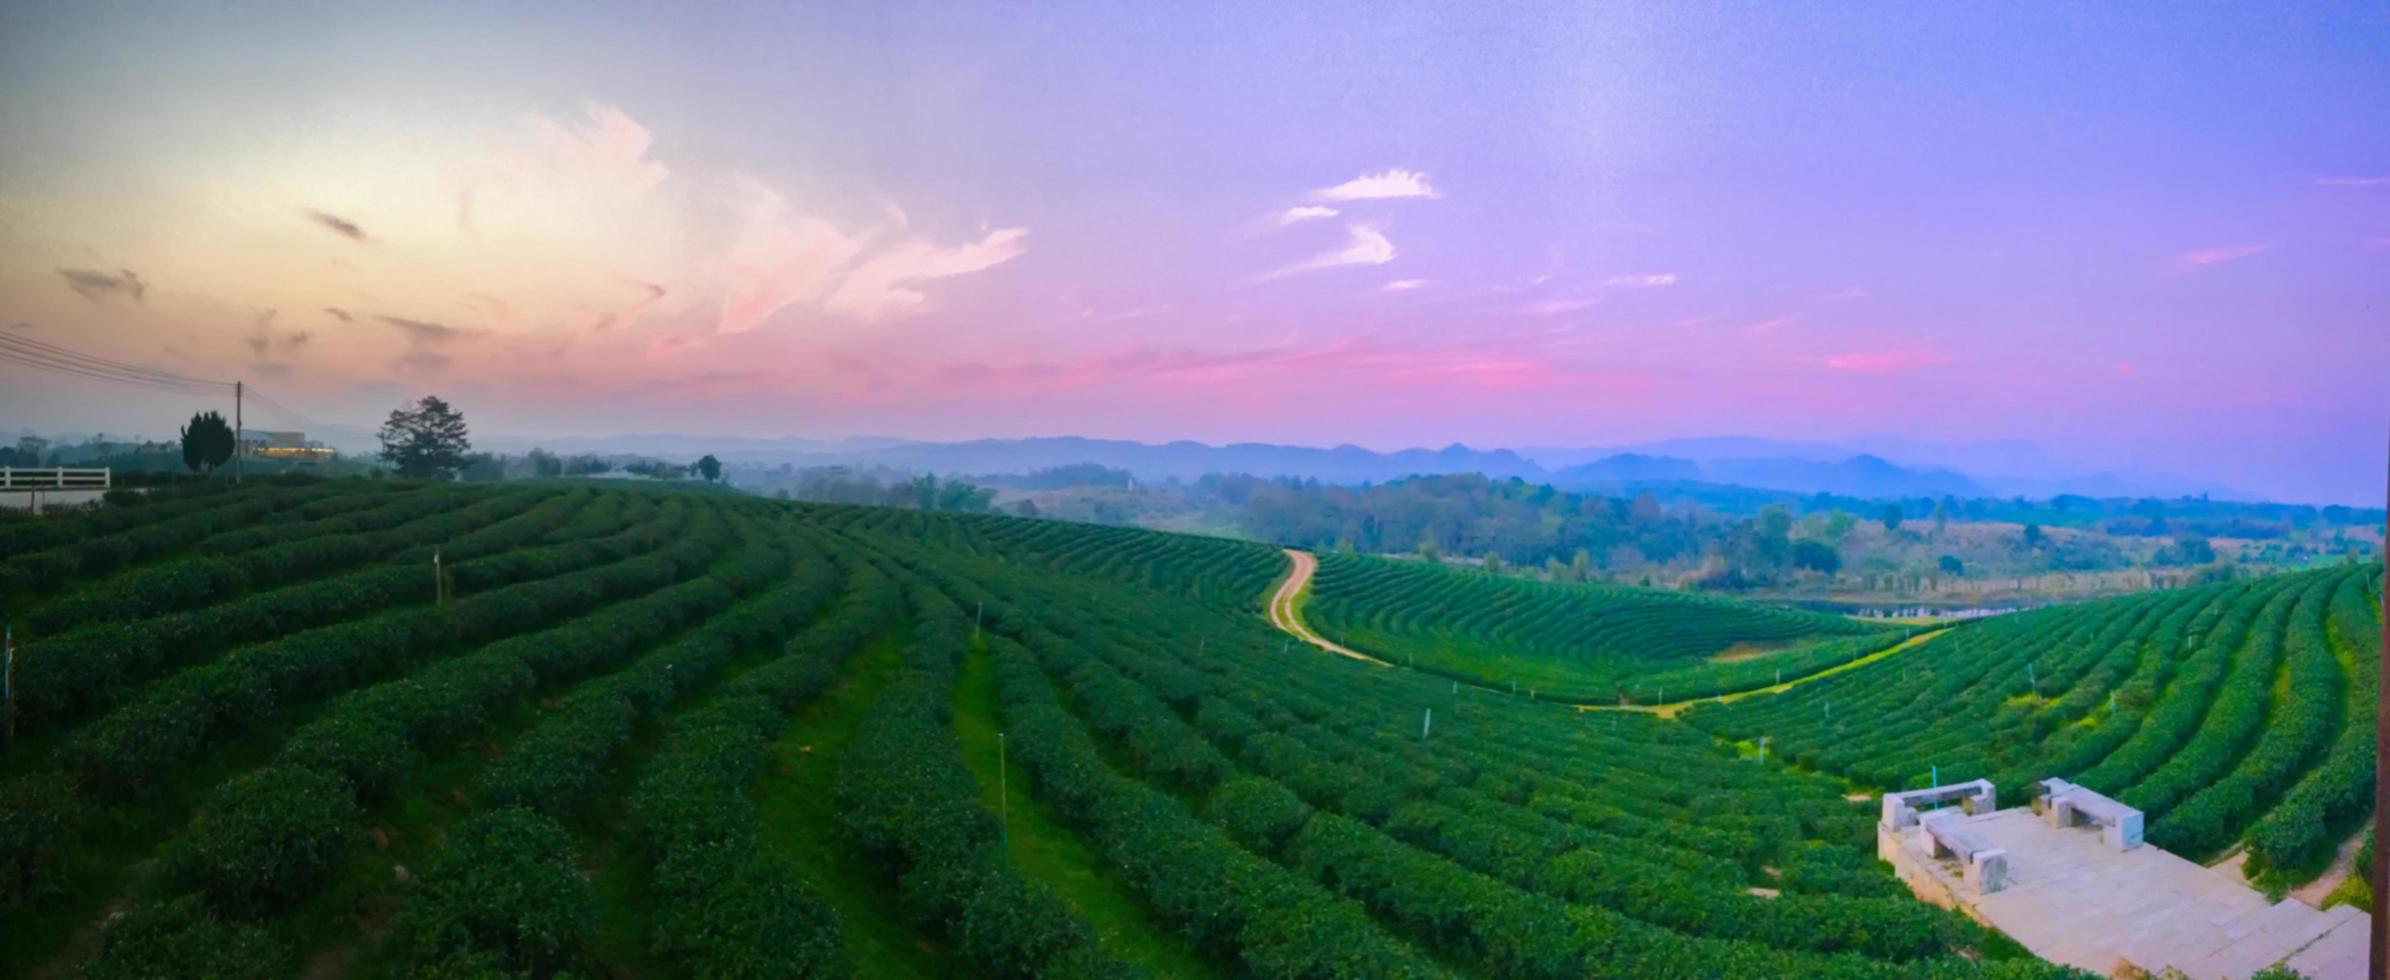 Landschaft des Teeplantagentals bei Sonnenuntergang. foto